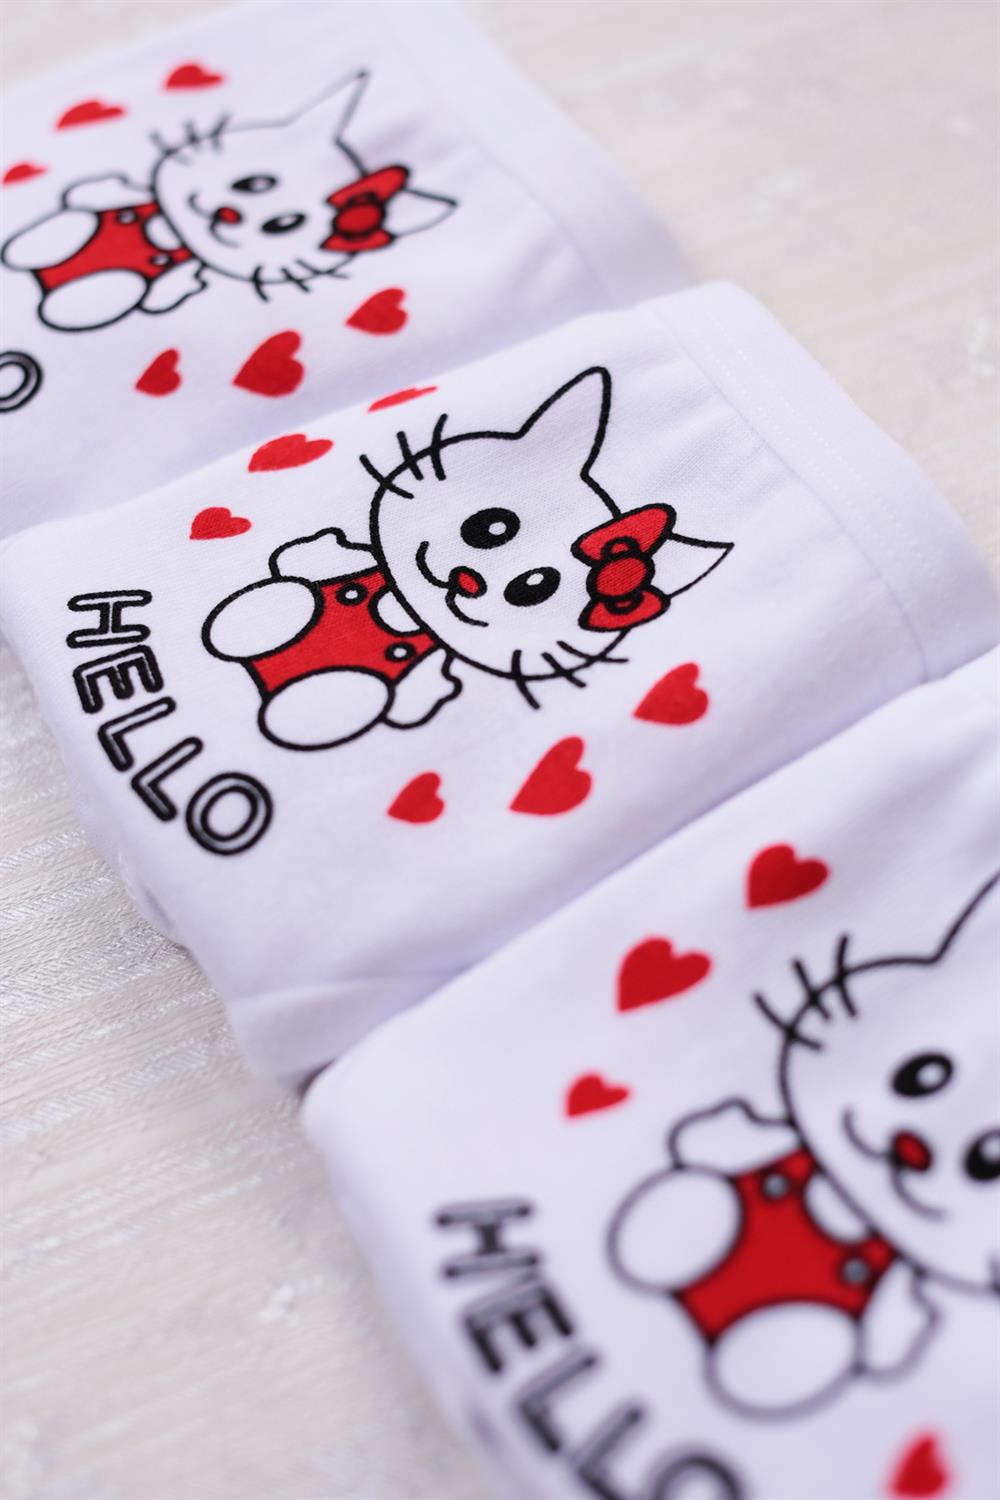 Satın almak online Mymelody Çocuk Külot Hello Kitty Güzel Kız